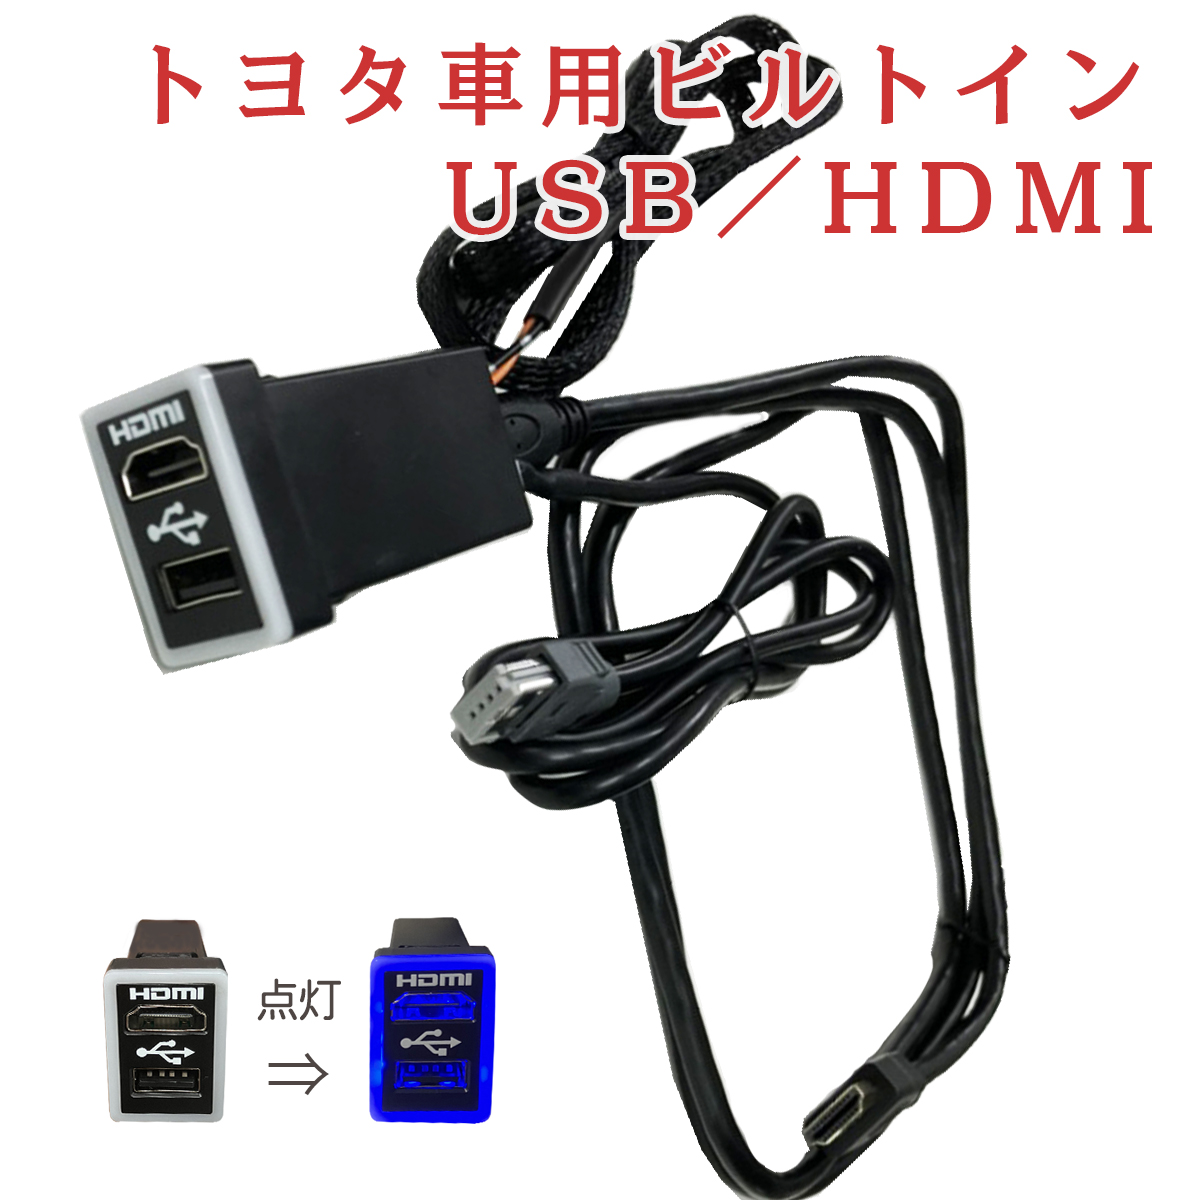 HDMI ビルトイン USB 変換 ケーブル トヨタ 車 アルパイン カーナビ NXシリーズ USB HDMI 接続 ユニット コード アクア  アルファード ヴィッツ ヴェルファイア ヴォクシー エスクァイア C-HR タンク ノア ハリアー ハイエース レジアスエース 車 youtube  